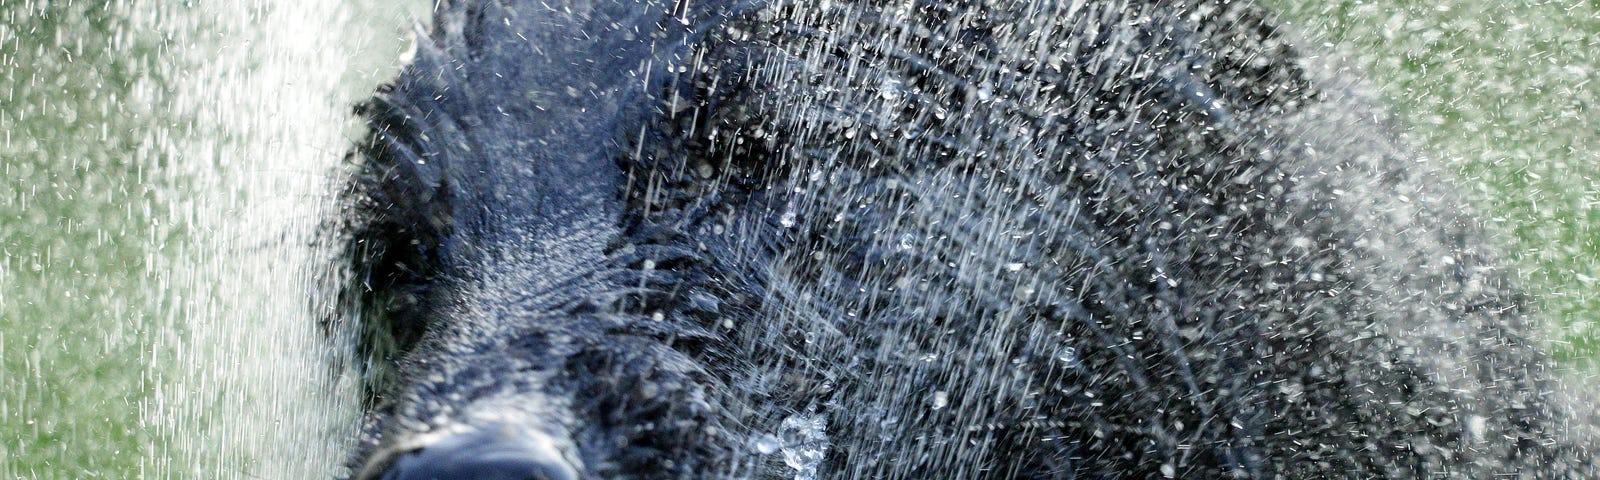 Close-up of large, wet, black dog, shaking itself.